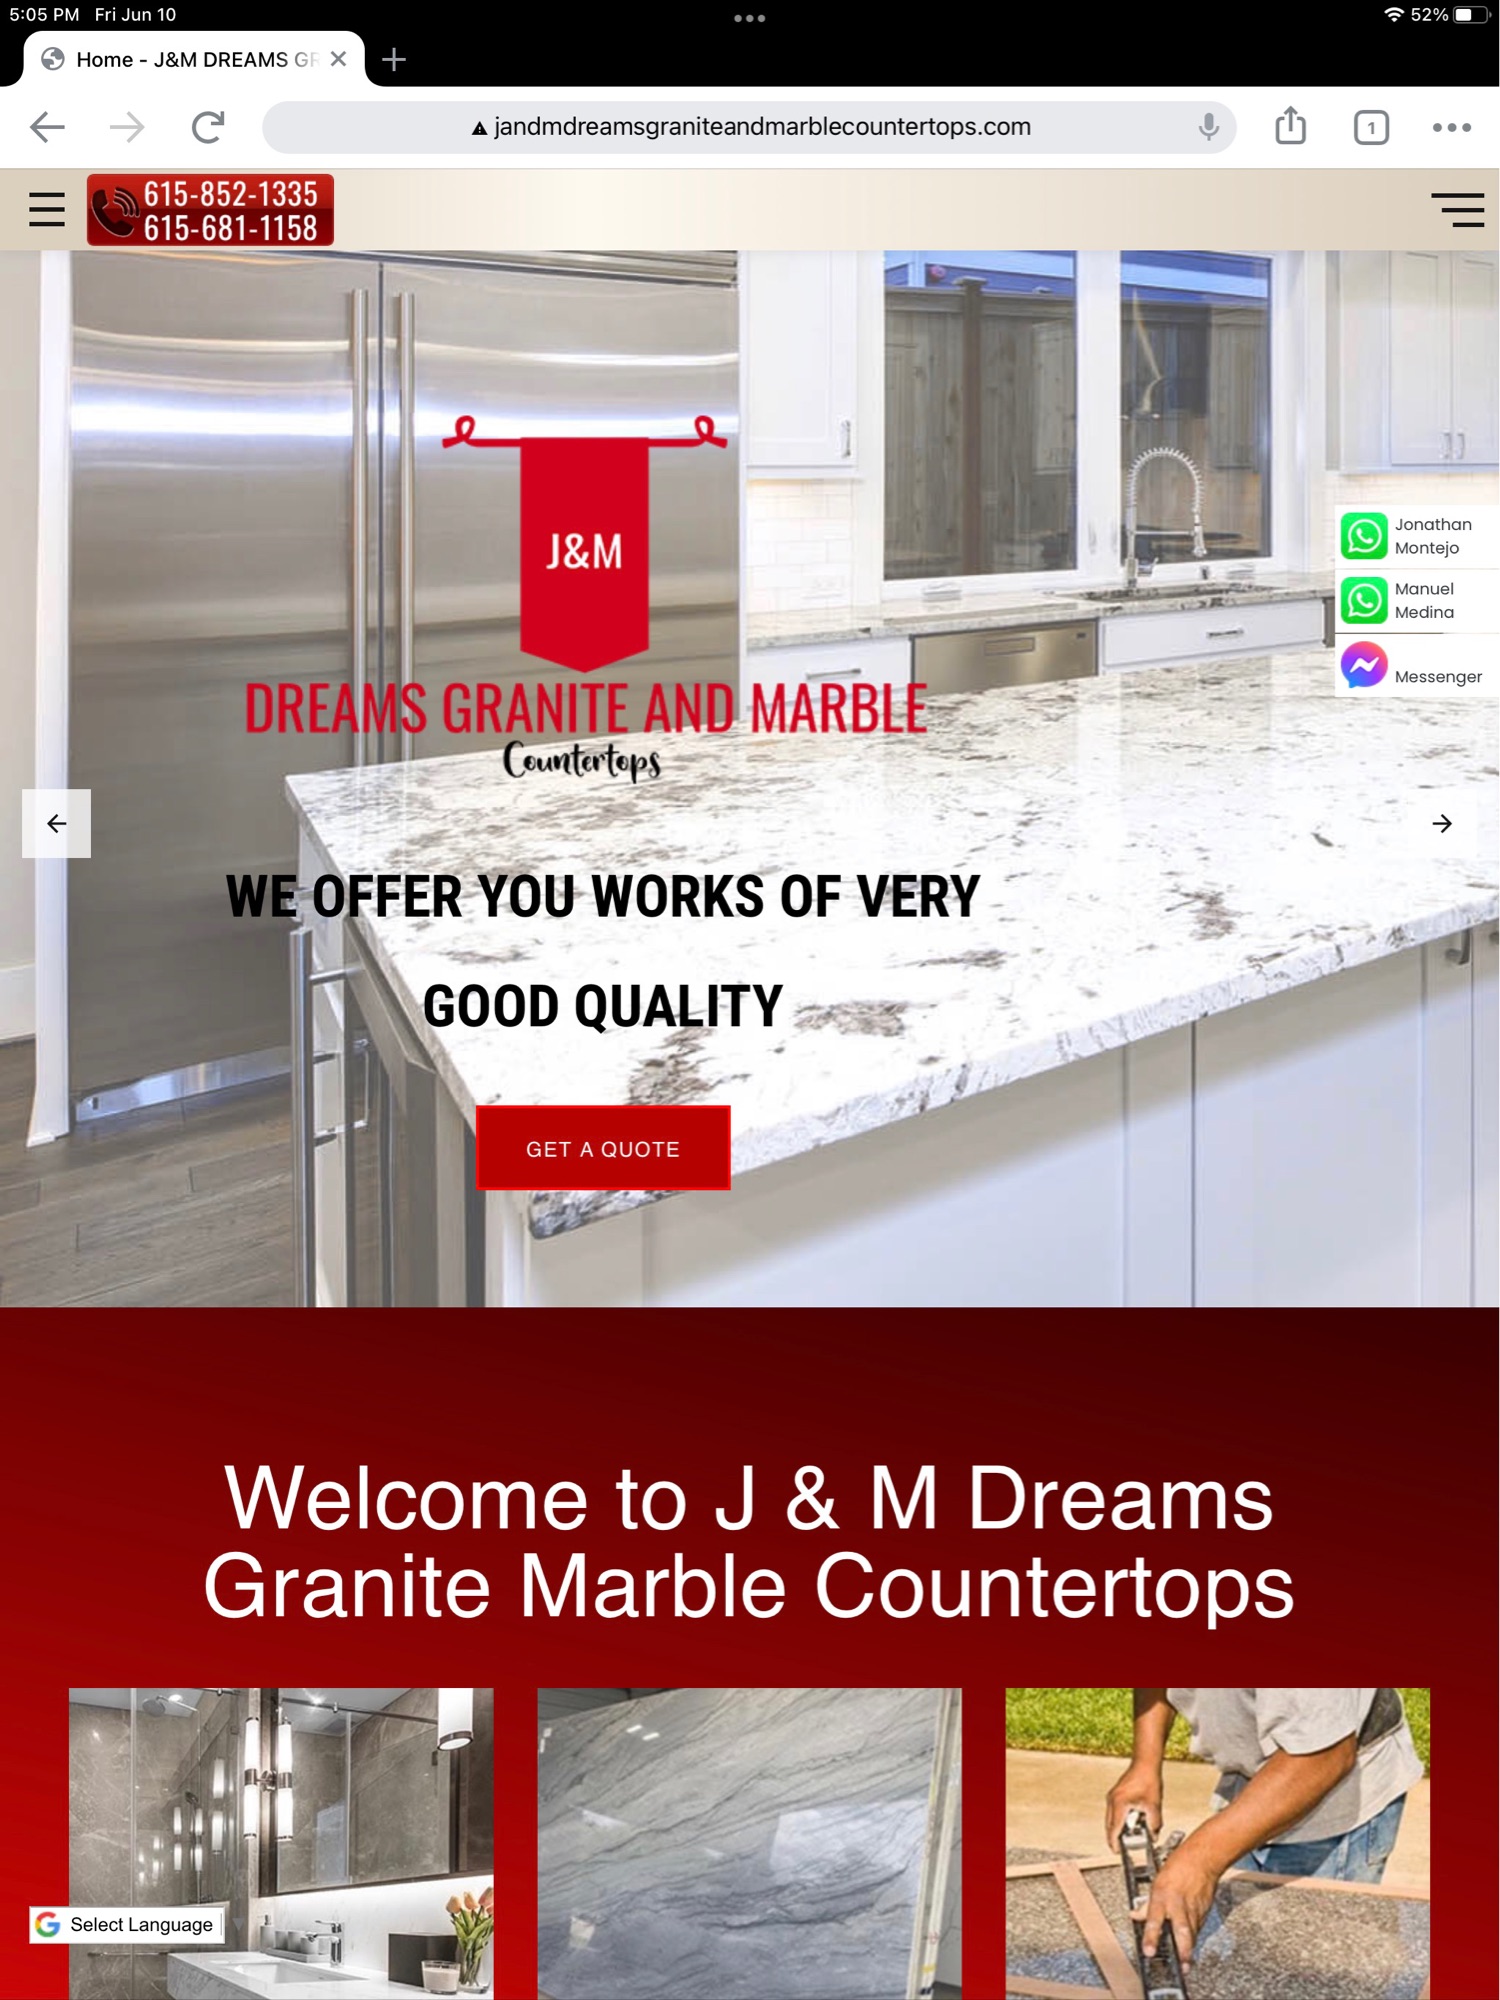 J&M Dreams Granite and Marble Countertops Logo